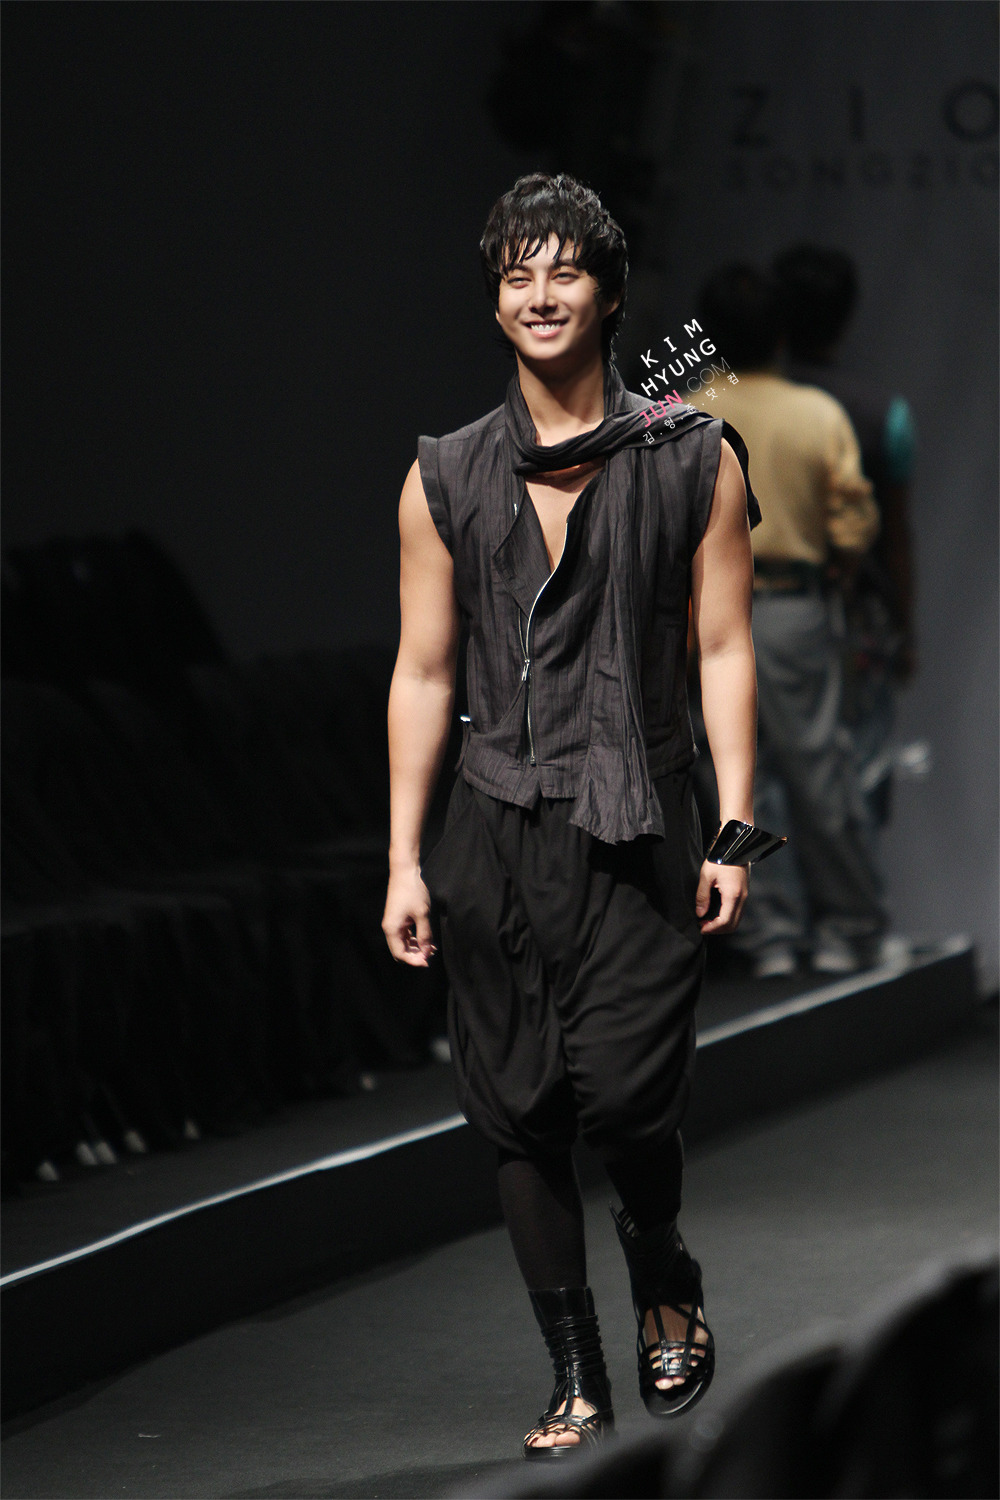 Kim Hyung Joon @ Semana de la Moda de Seúl 10.22.10 por Song Zio 791b86dfb1ed752fd1164e4a